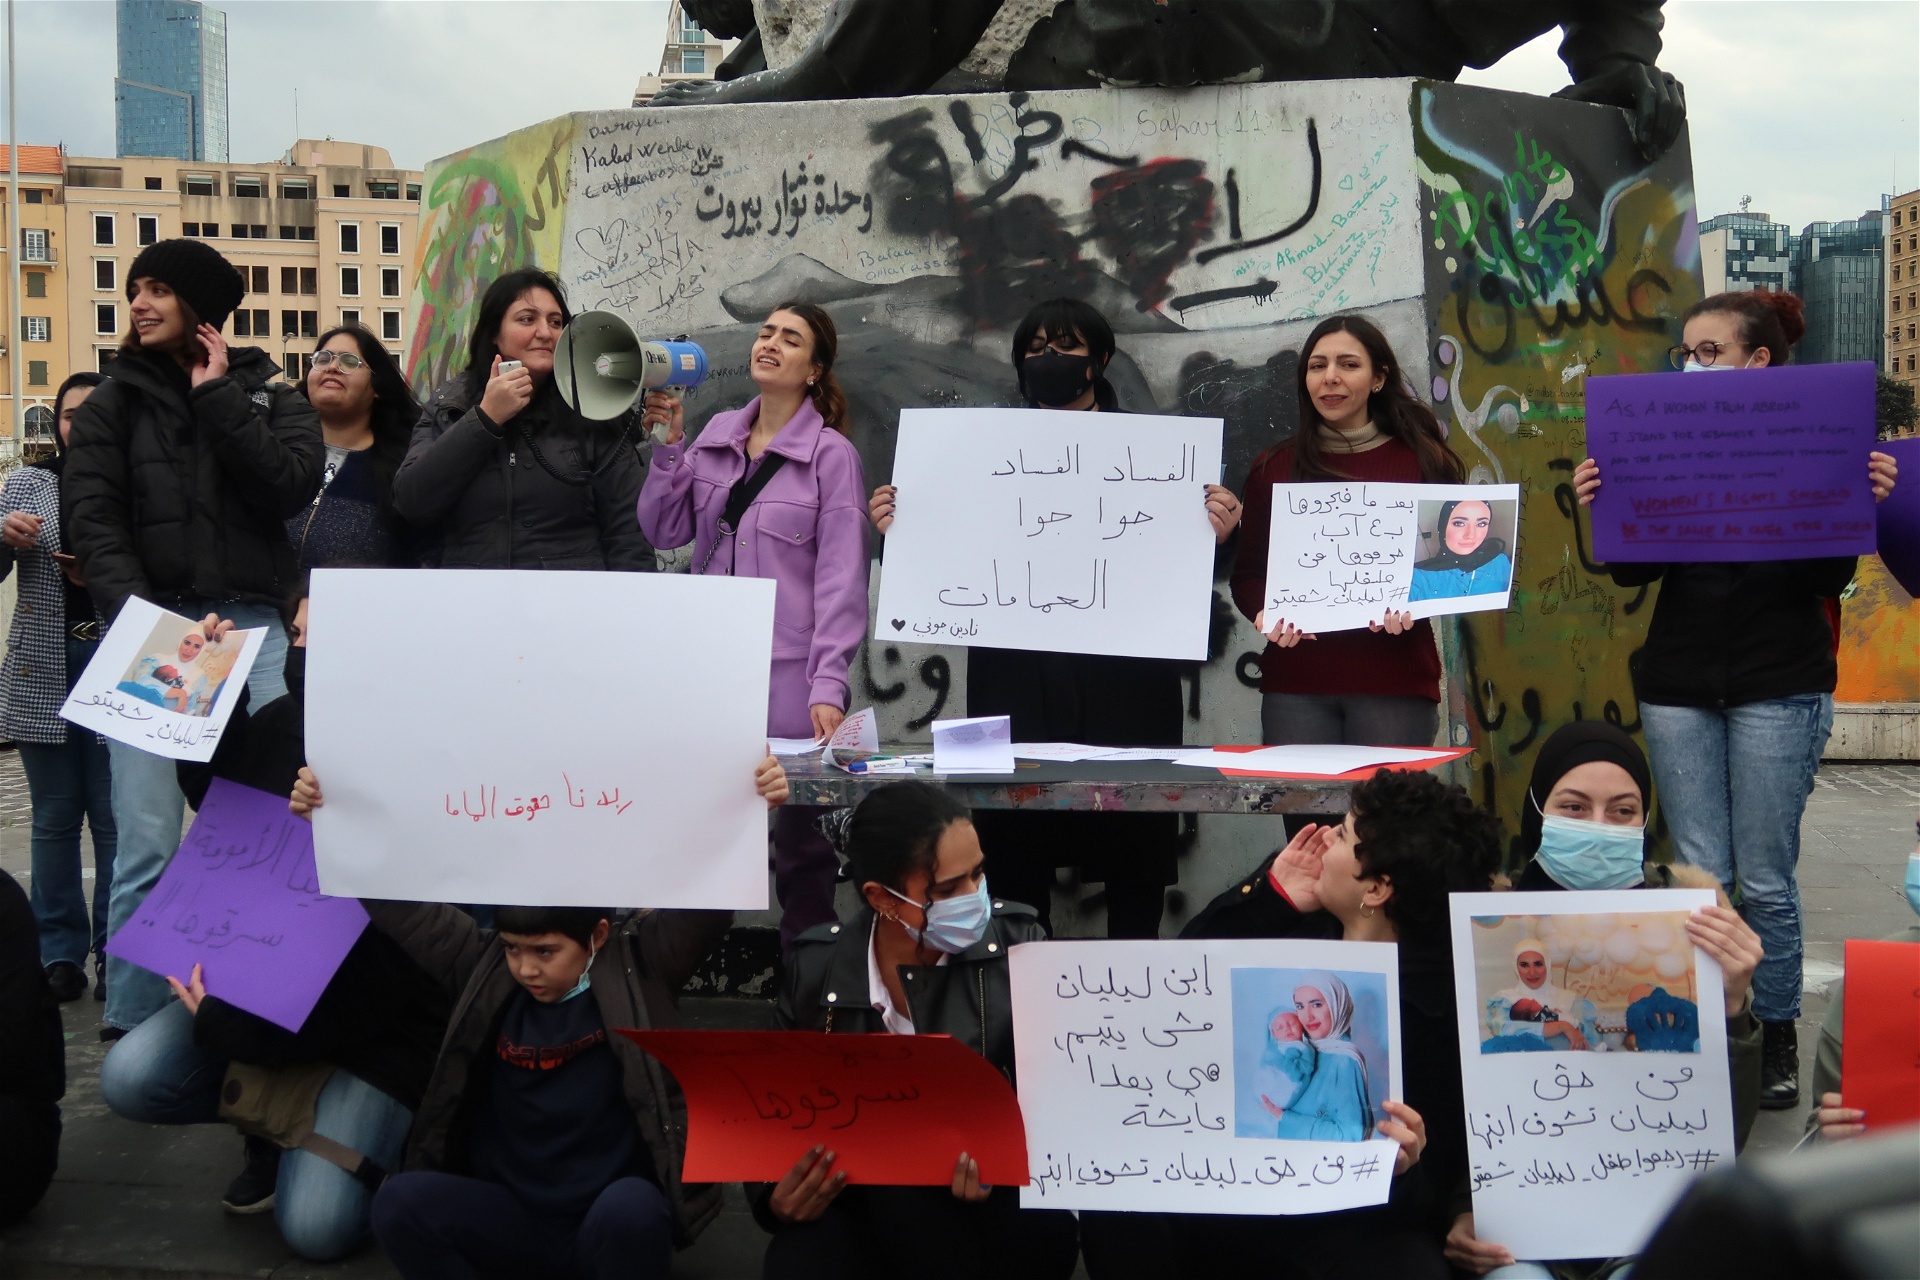 Varje demonstration hedrar Fe-Male minnet av Nadine, en ung kvinna som nekades vårdnaden om sitt barn och hann dö innan hon beviljades den.